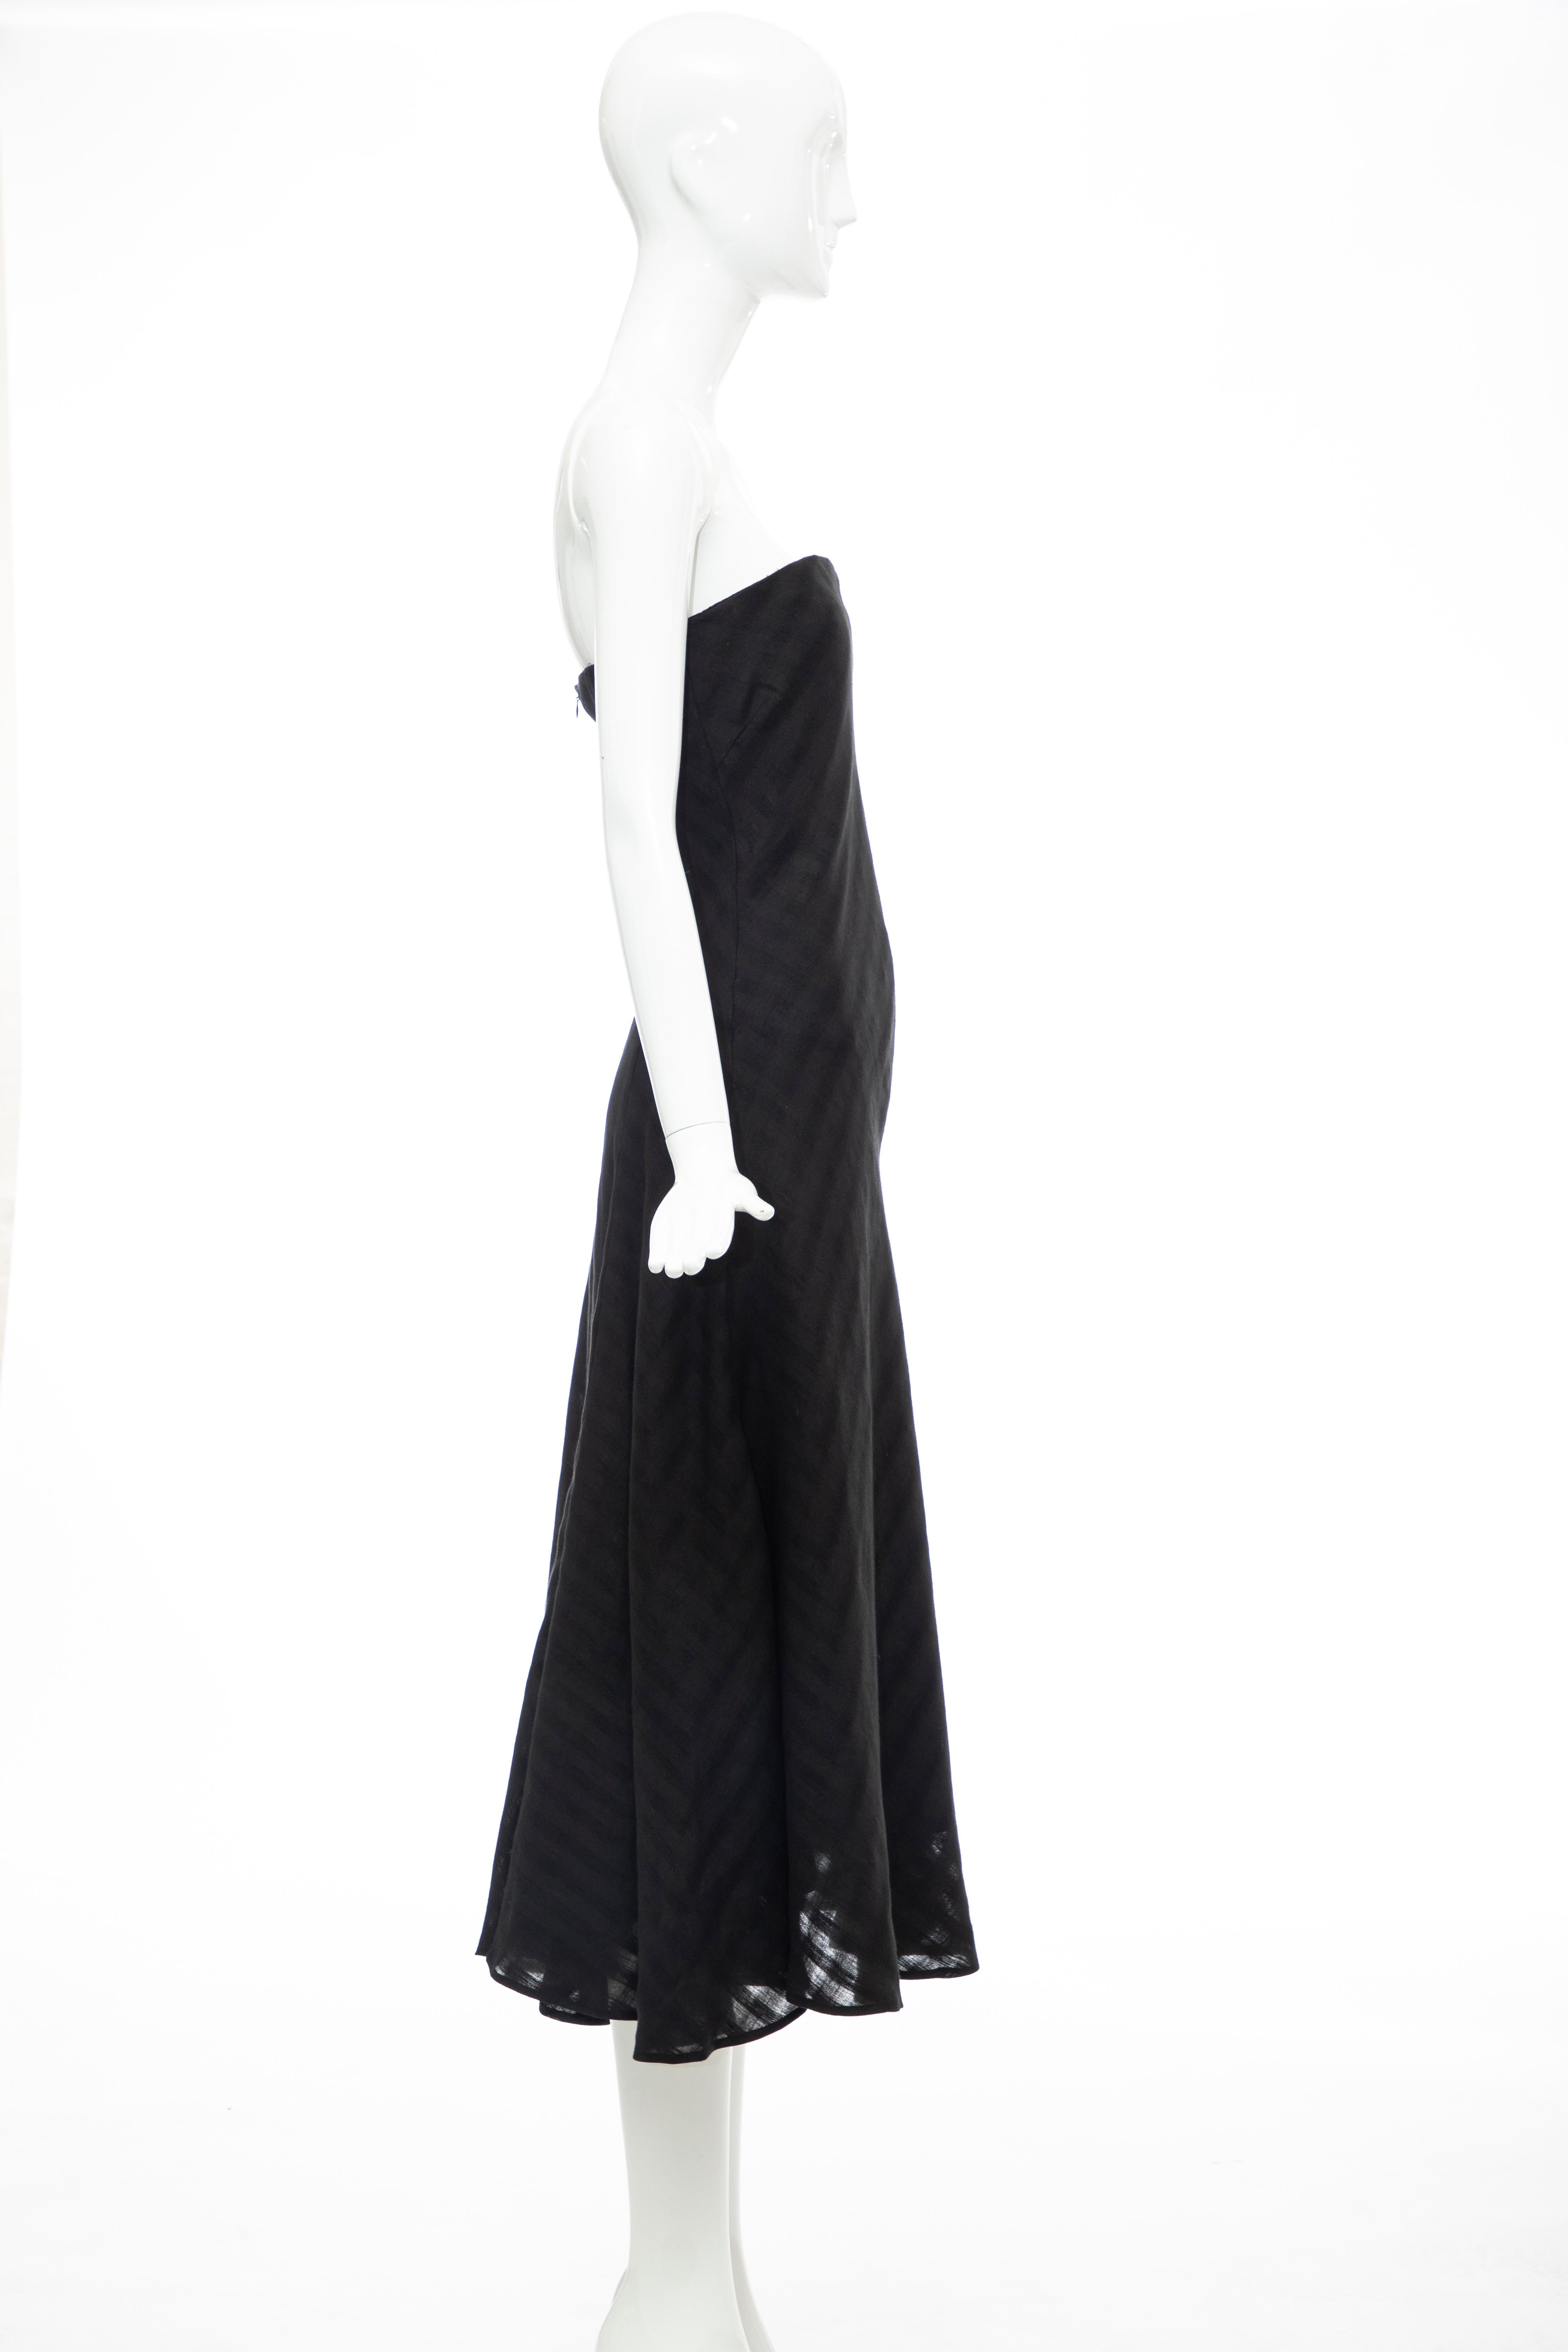 Olivier Theyskens Runway Black Linen Dress, Spring 2000 For Sale 1